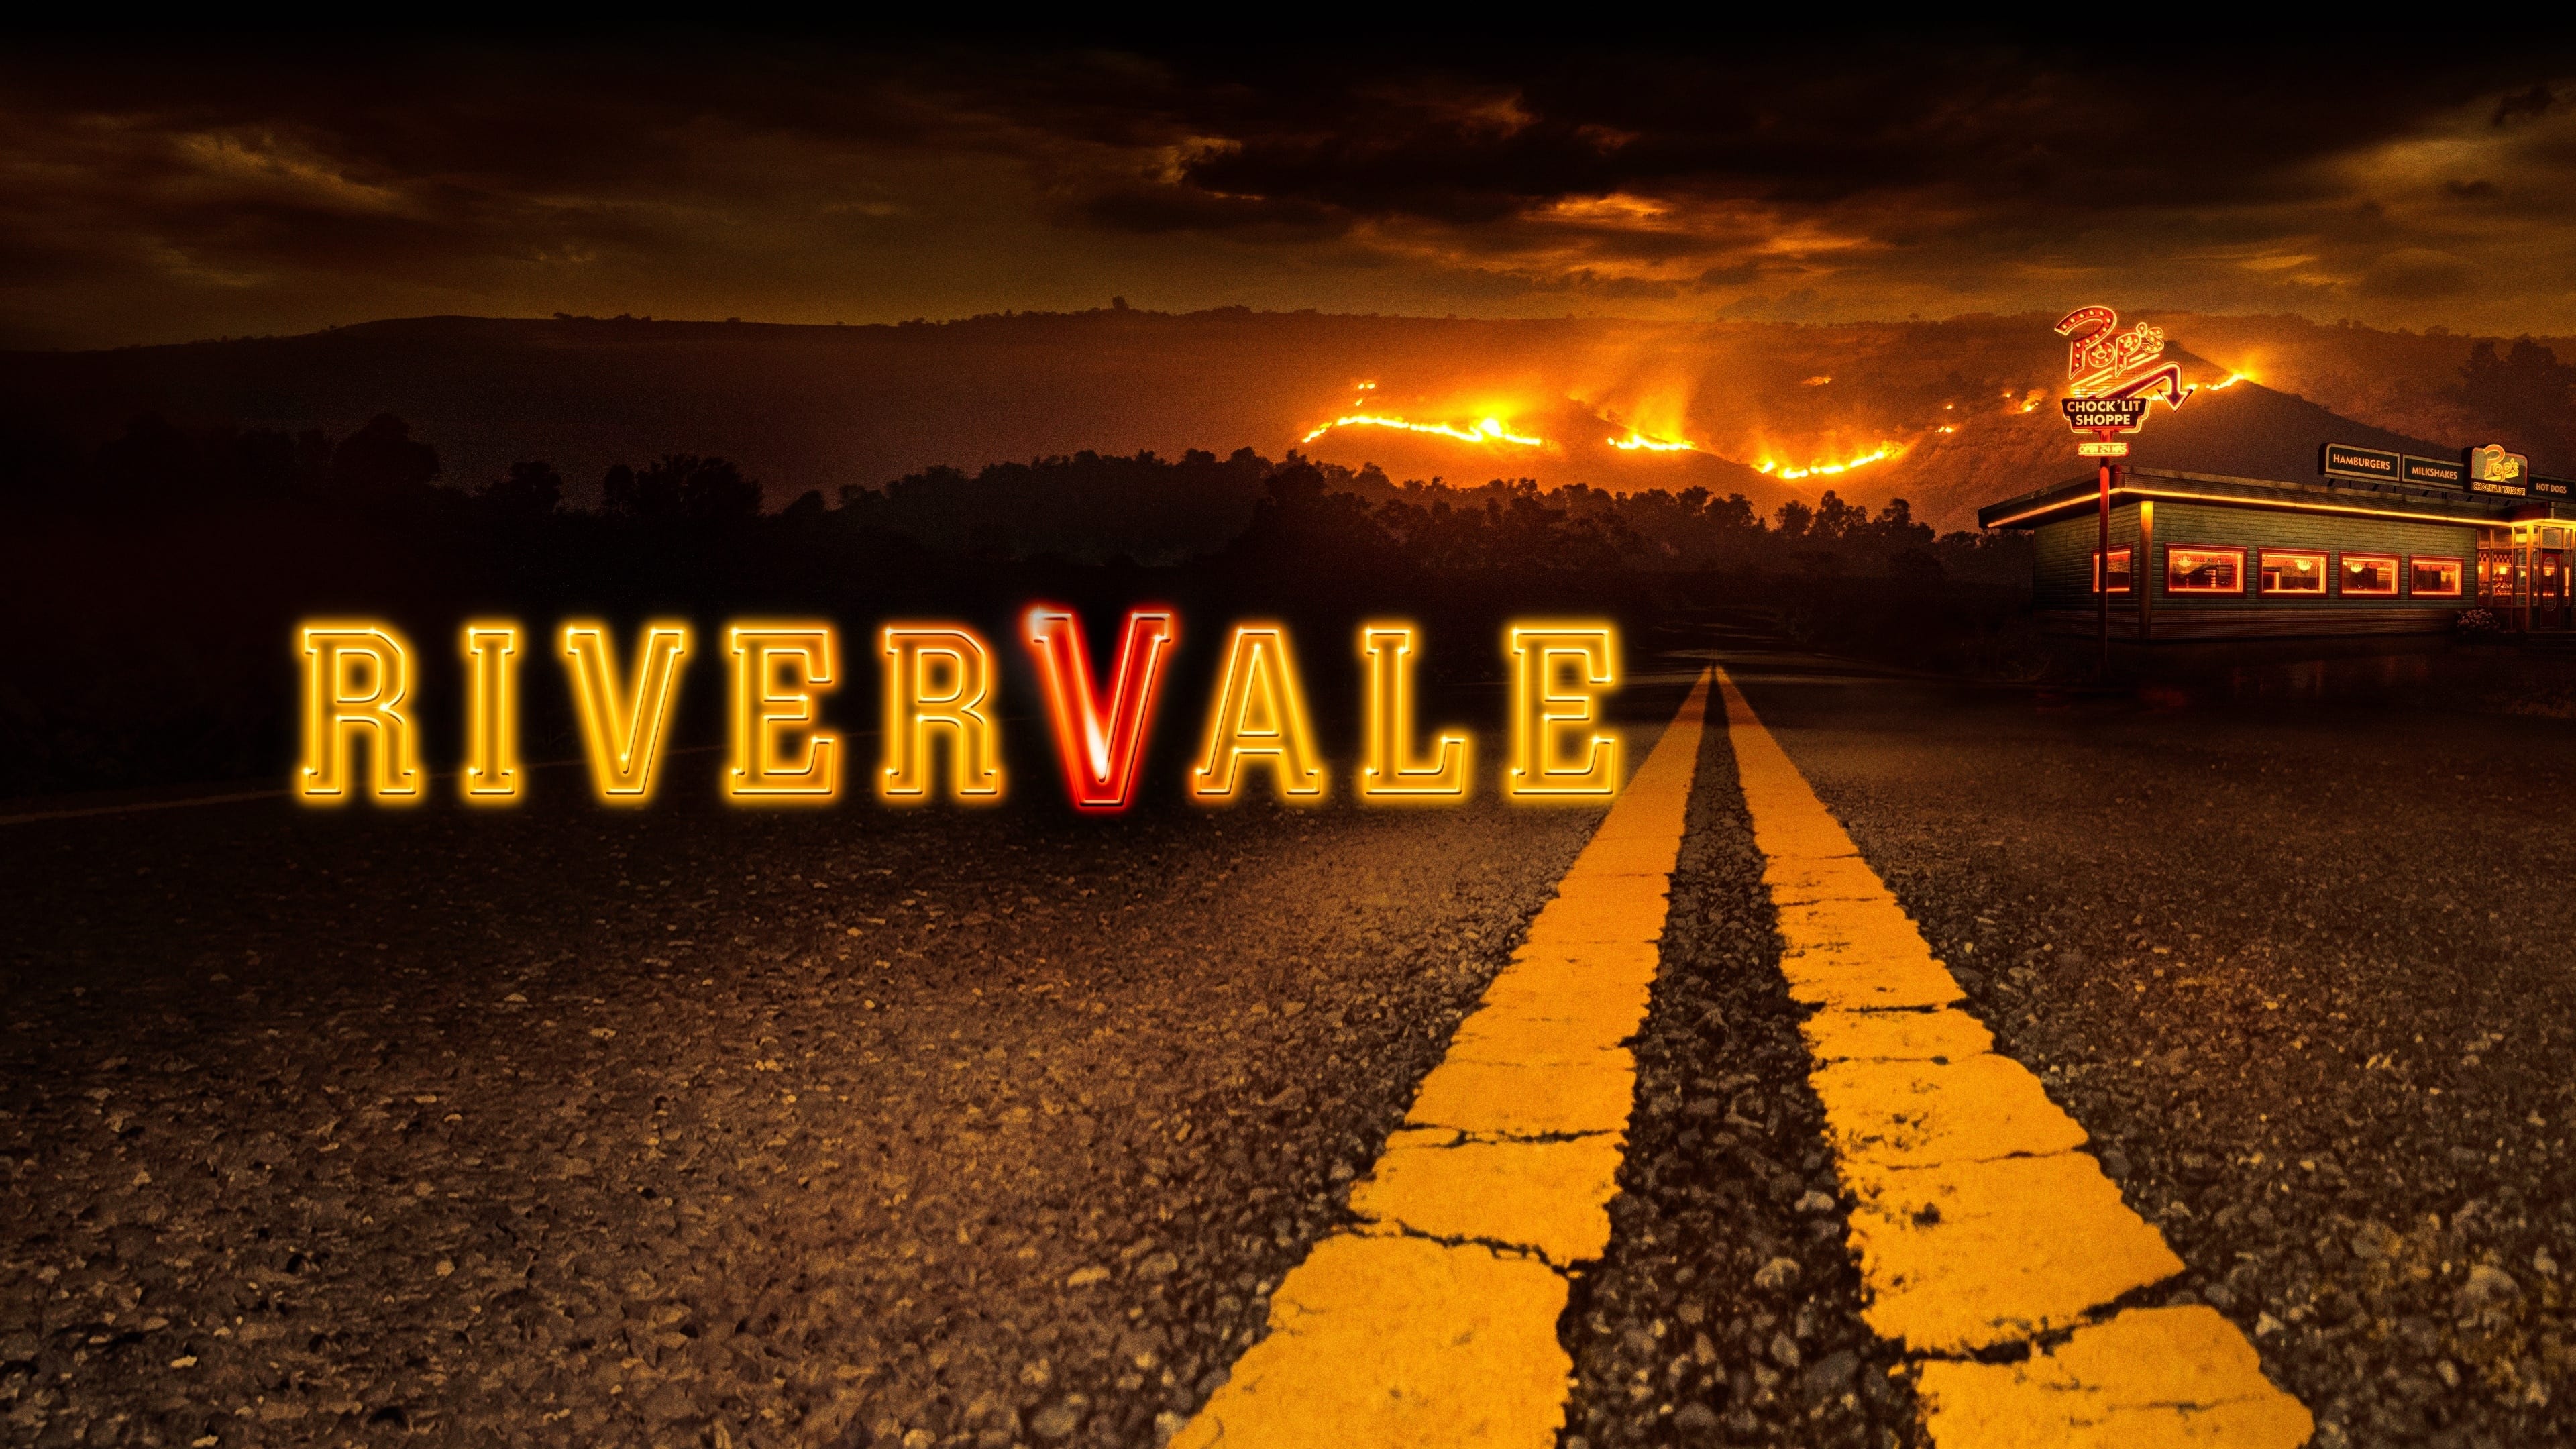 Riverdale - Season 6 Episode 3